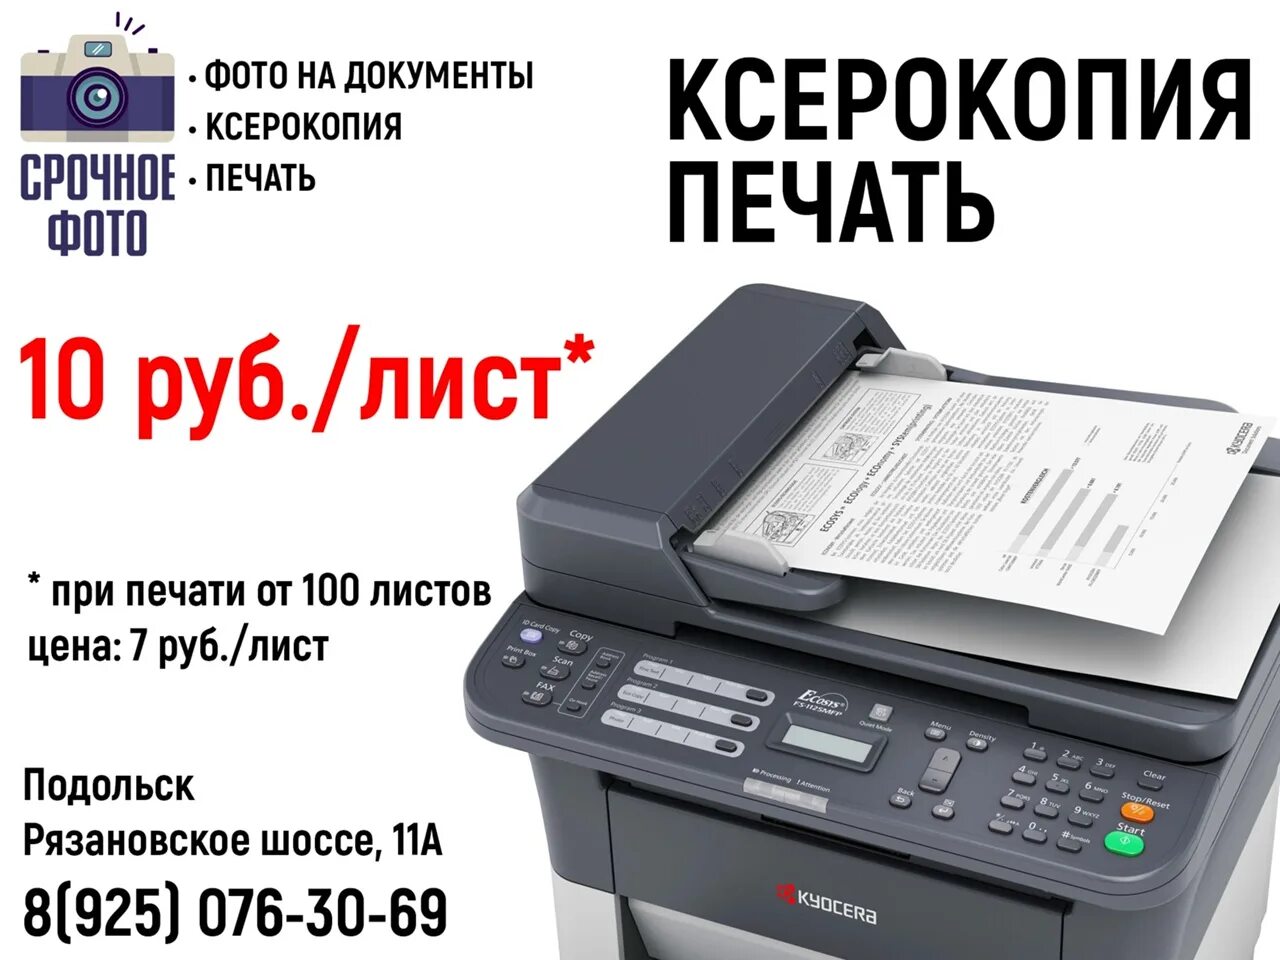 Ксерокопия печать. Ксерокопия распечатка. Ксерокс распечатка. Ксерокопия распечатка сканирование.